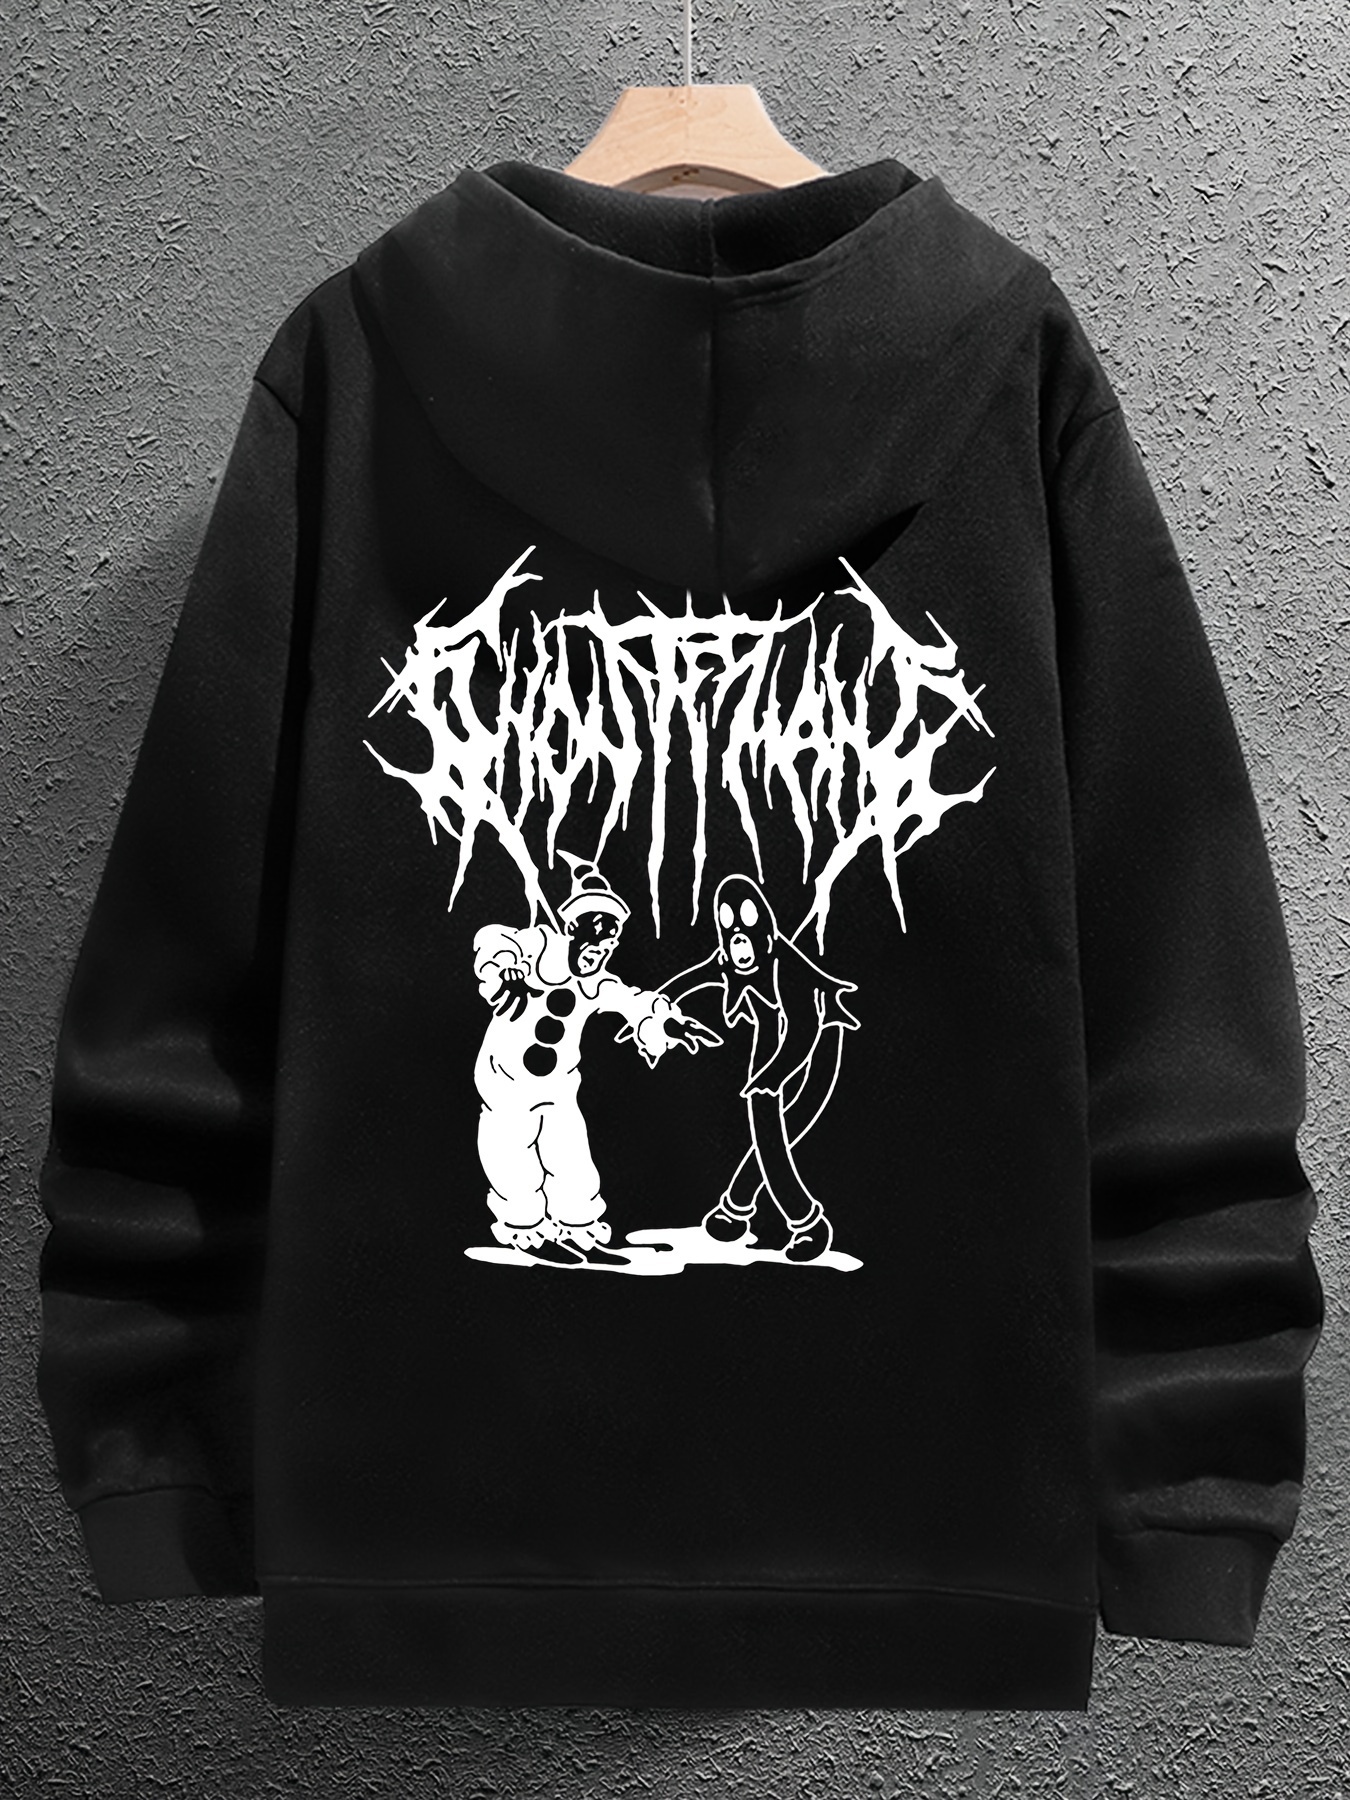 Limited Ghostemane Double Sided Print Hoodie Sweatshirt Streetwear Hip Hop  Metal